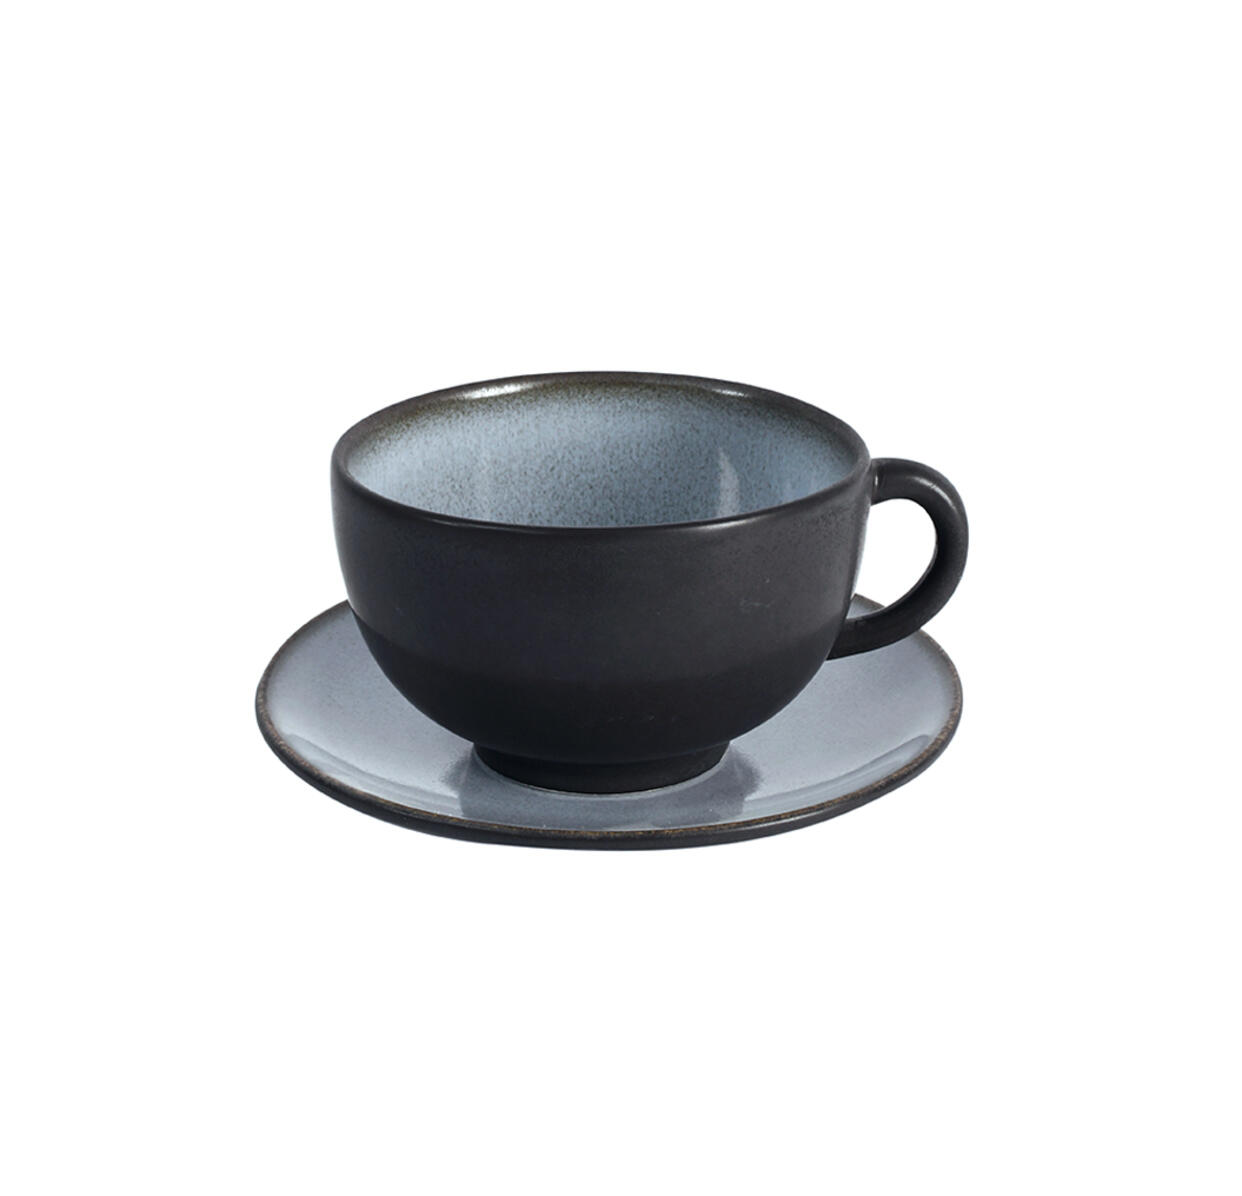 cup & saucer - l tourron écorce ceramic manufacturer